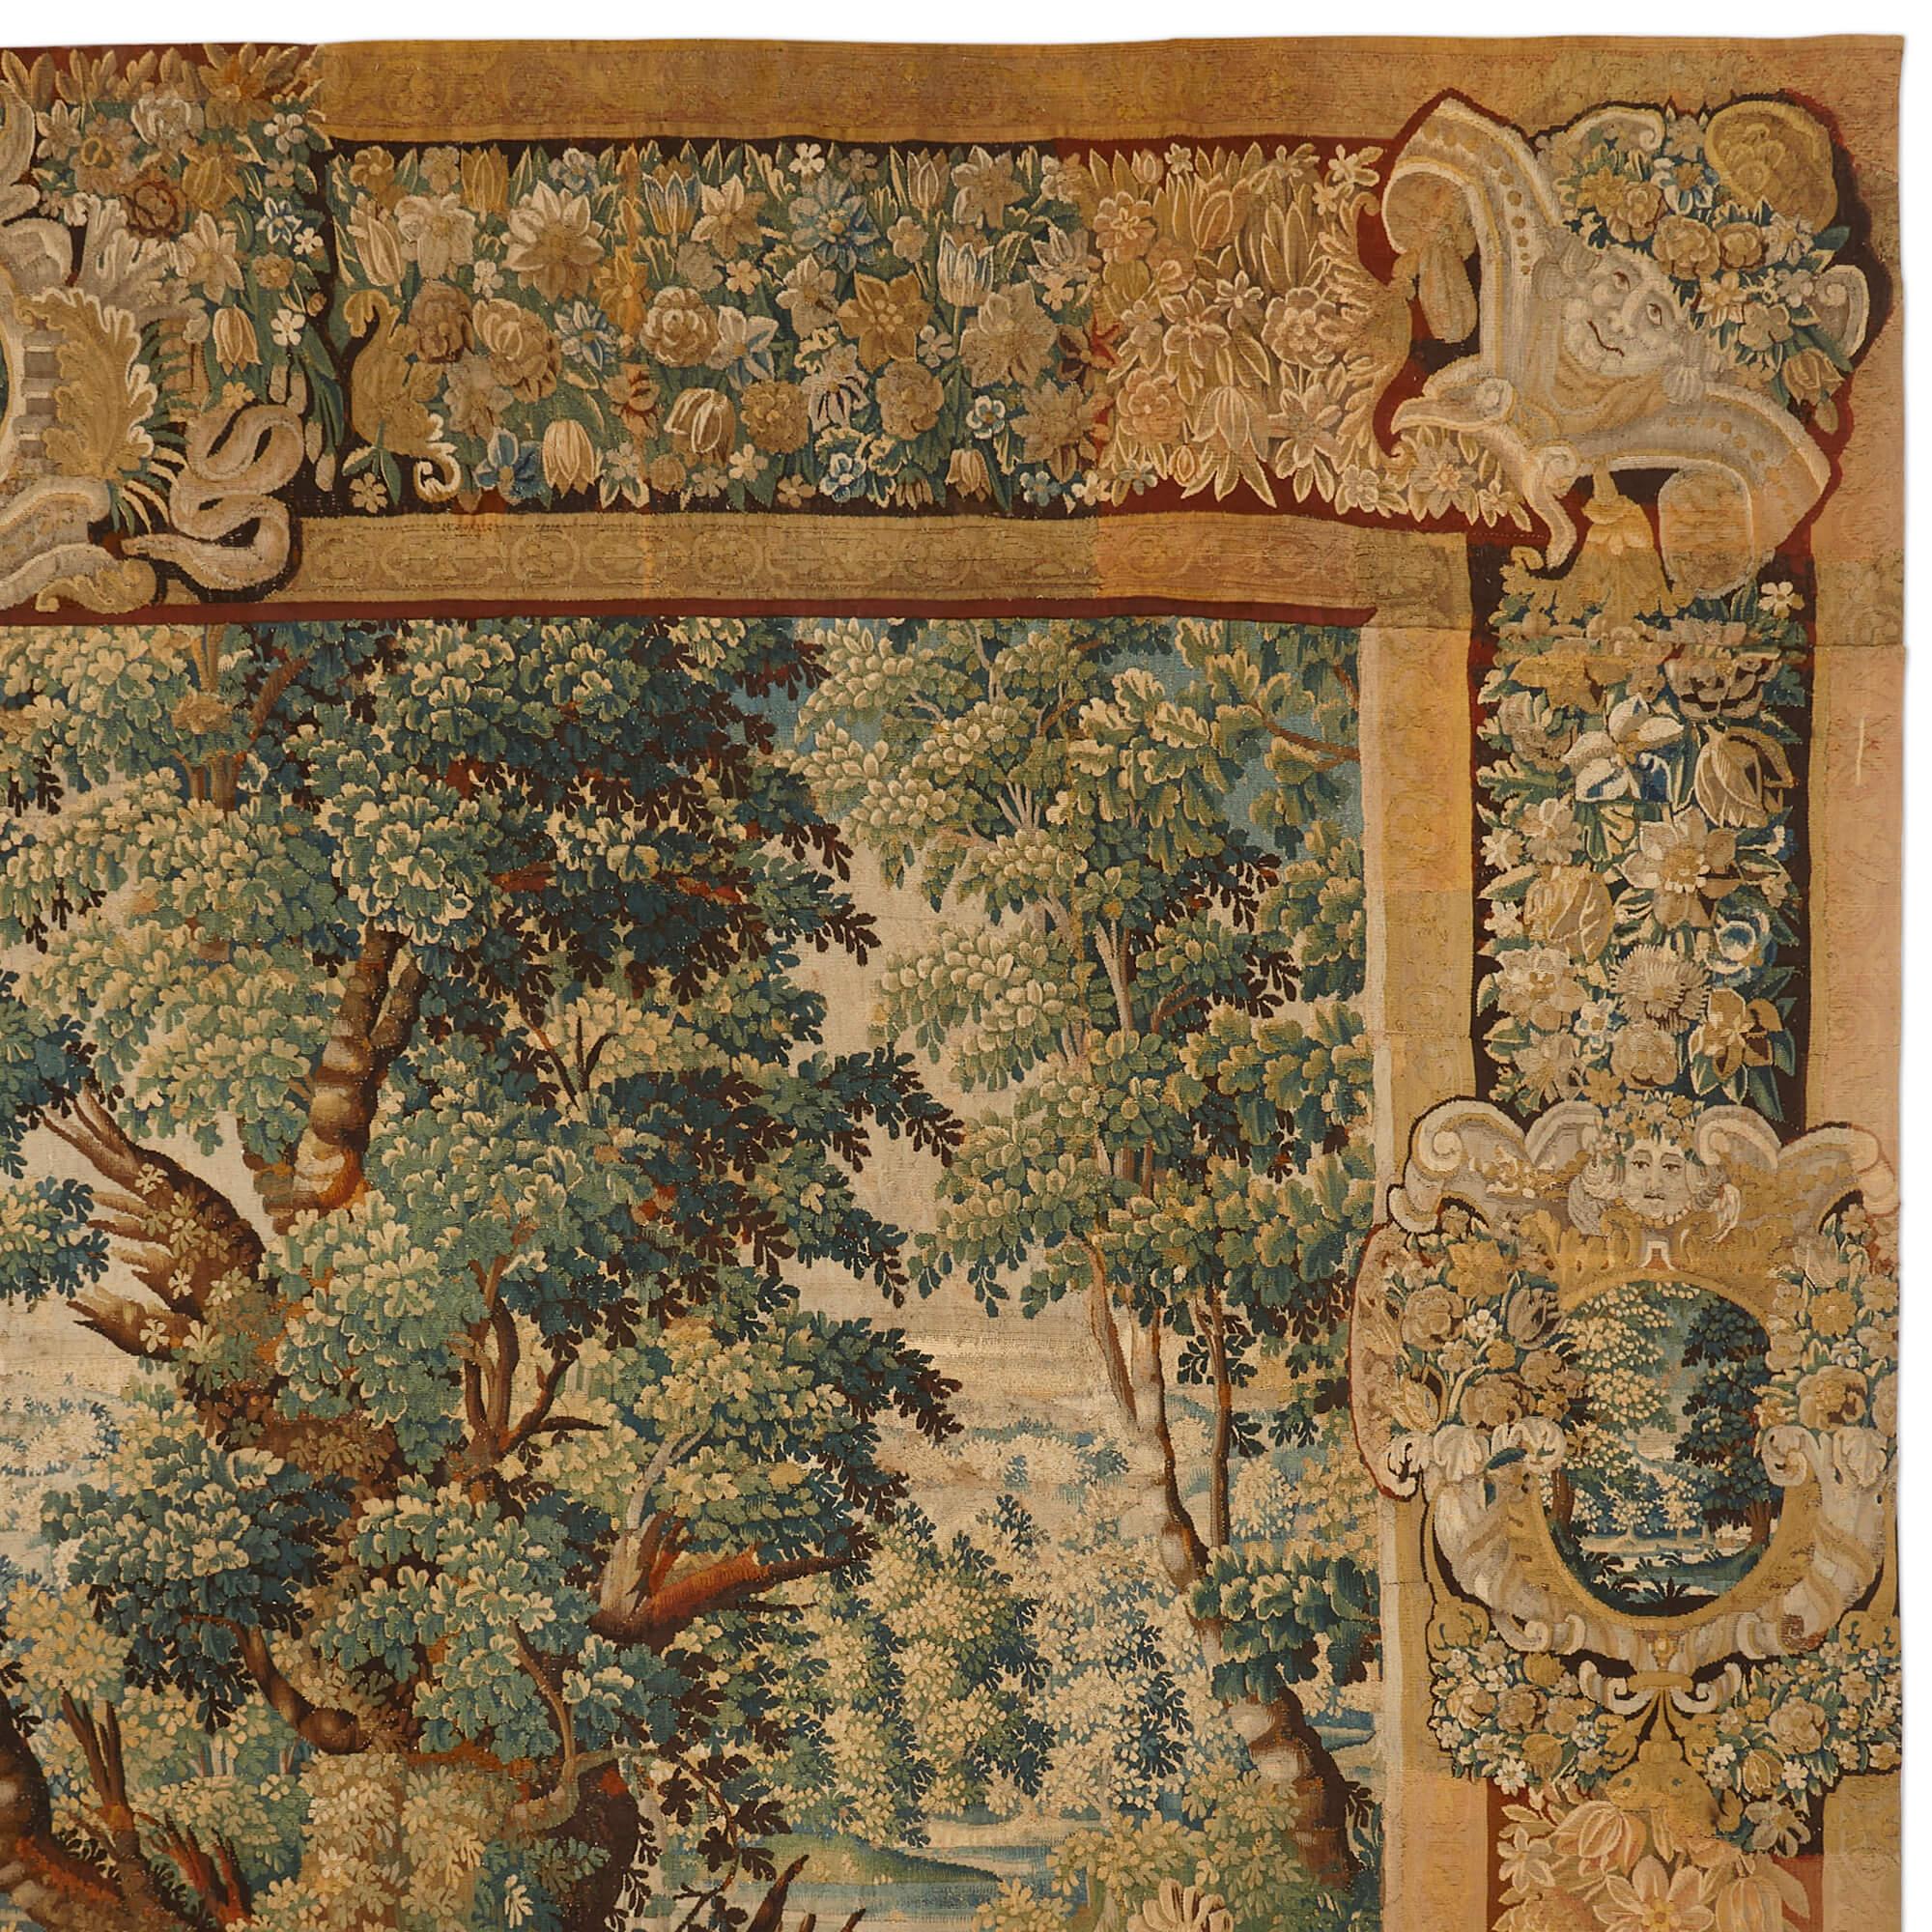 Großer flämischer Wollteppich aus dem 17.
Flämisch, 17. Jahrhundert
Höhe 323cm, Breite 424cm

Dieser sehr große und exquisite Wandteppich wurde im 17. Jahrhundert in Flandern aus Wolle gefertigt und folgt der Tradition der Grünteppiche. Diese